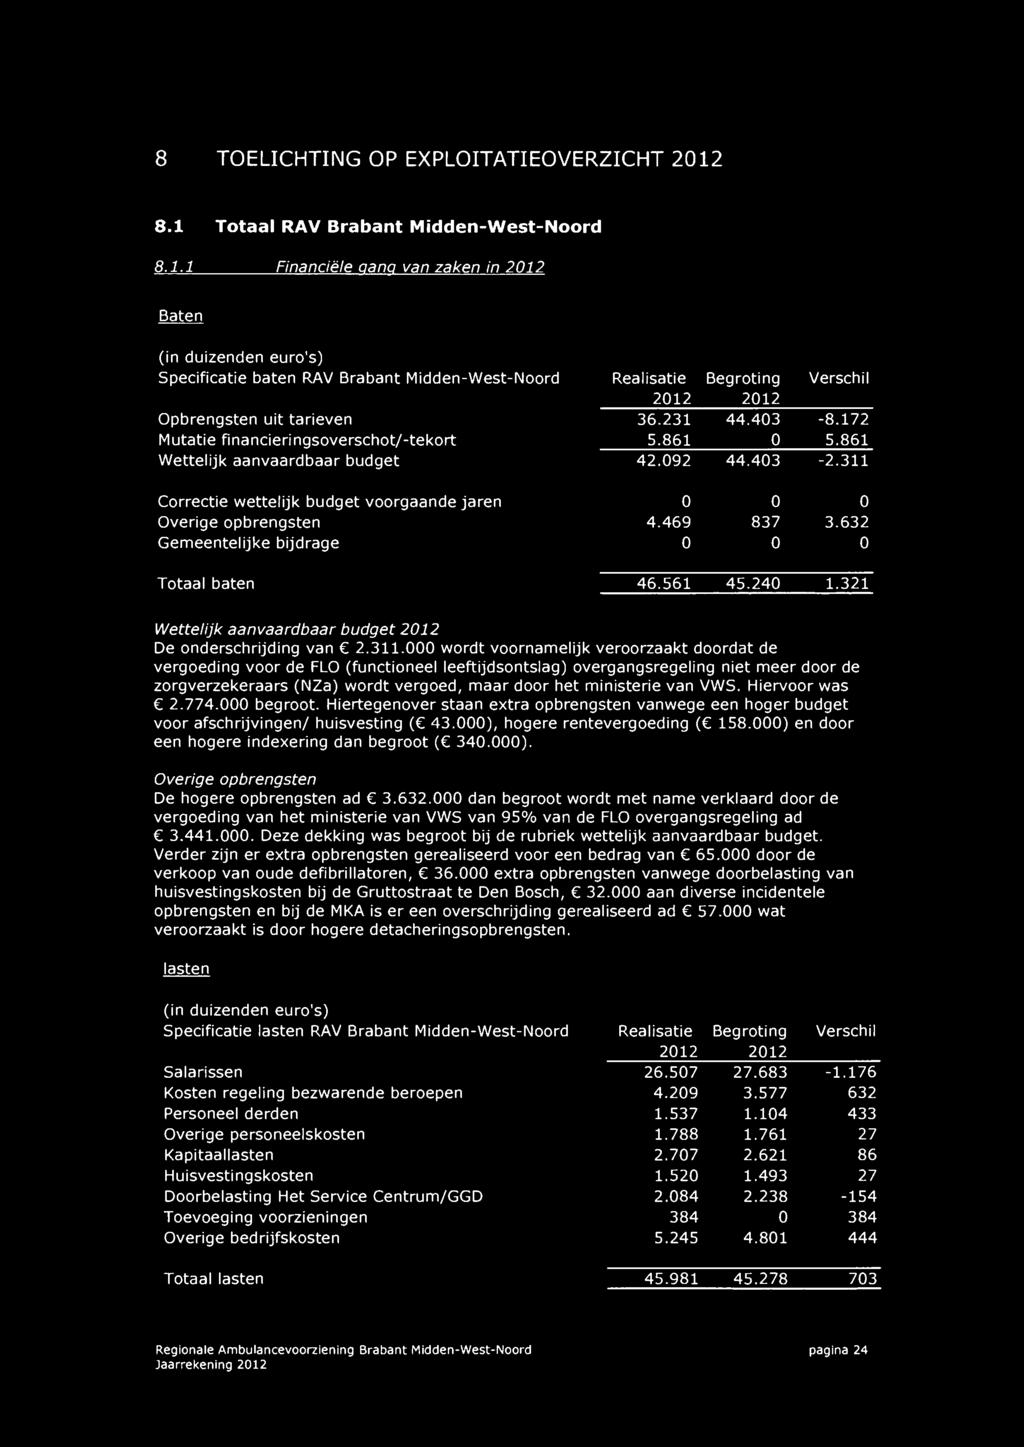 Mutatie fi nancieri ngsoverschot/ -tekort Wettelijk aanvaardbaar budget Correctie wettelijk budget voorgaande jaren Overige opbrengsten Gemeentelijke bijdrage 2012 2012 36.231 44.403 5.861 0 42.